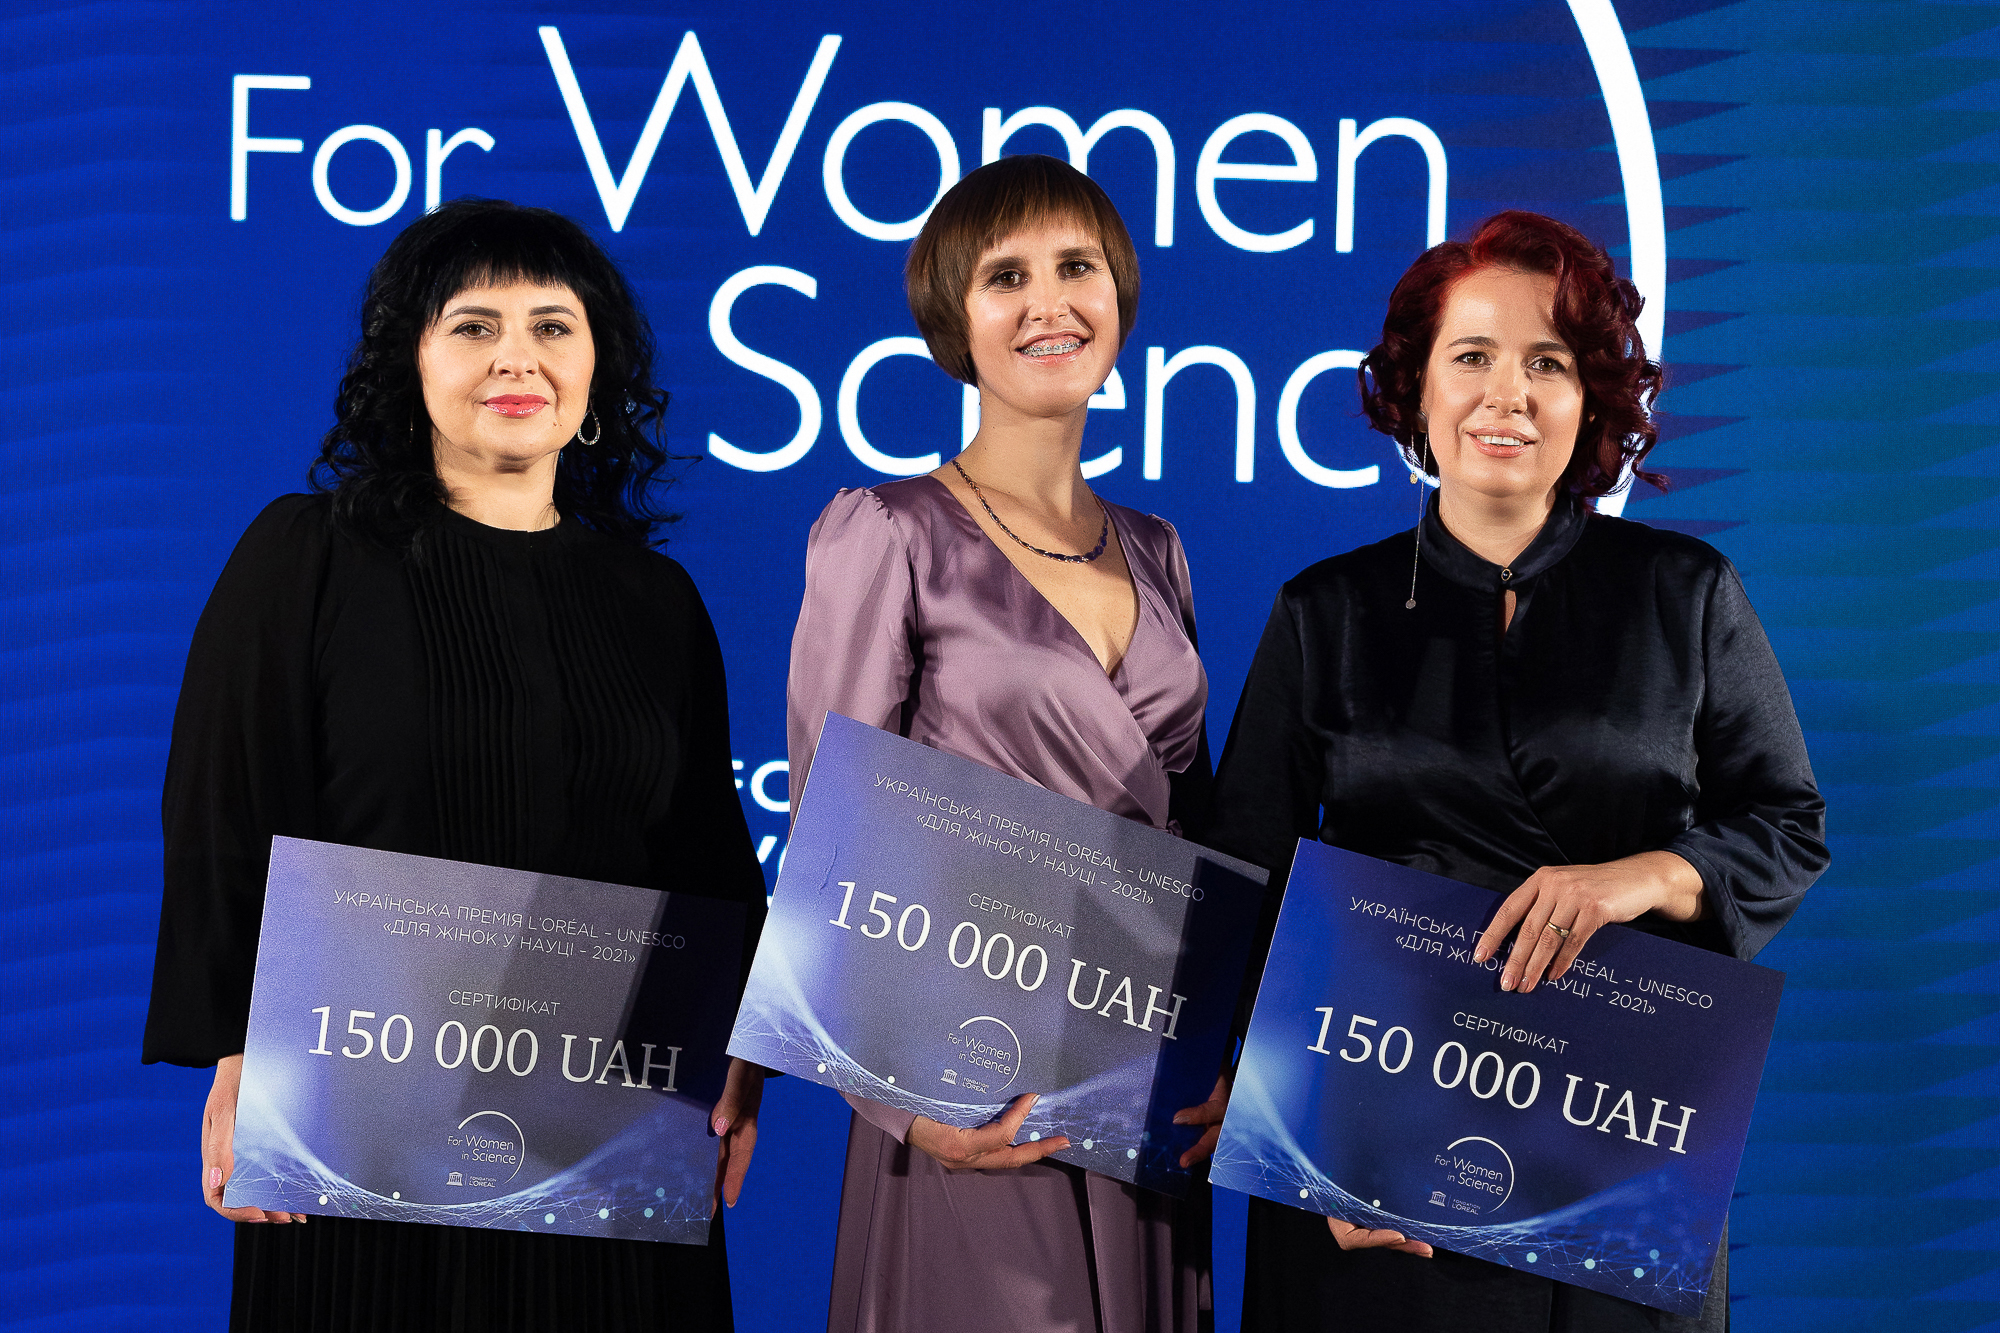 L’Oréal Україна провела церемонію нагородження переможців премії "Для  жінок  у  науці"